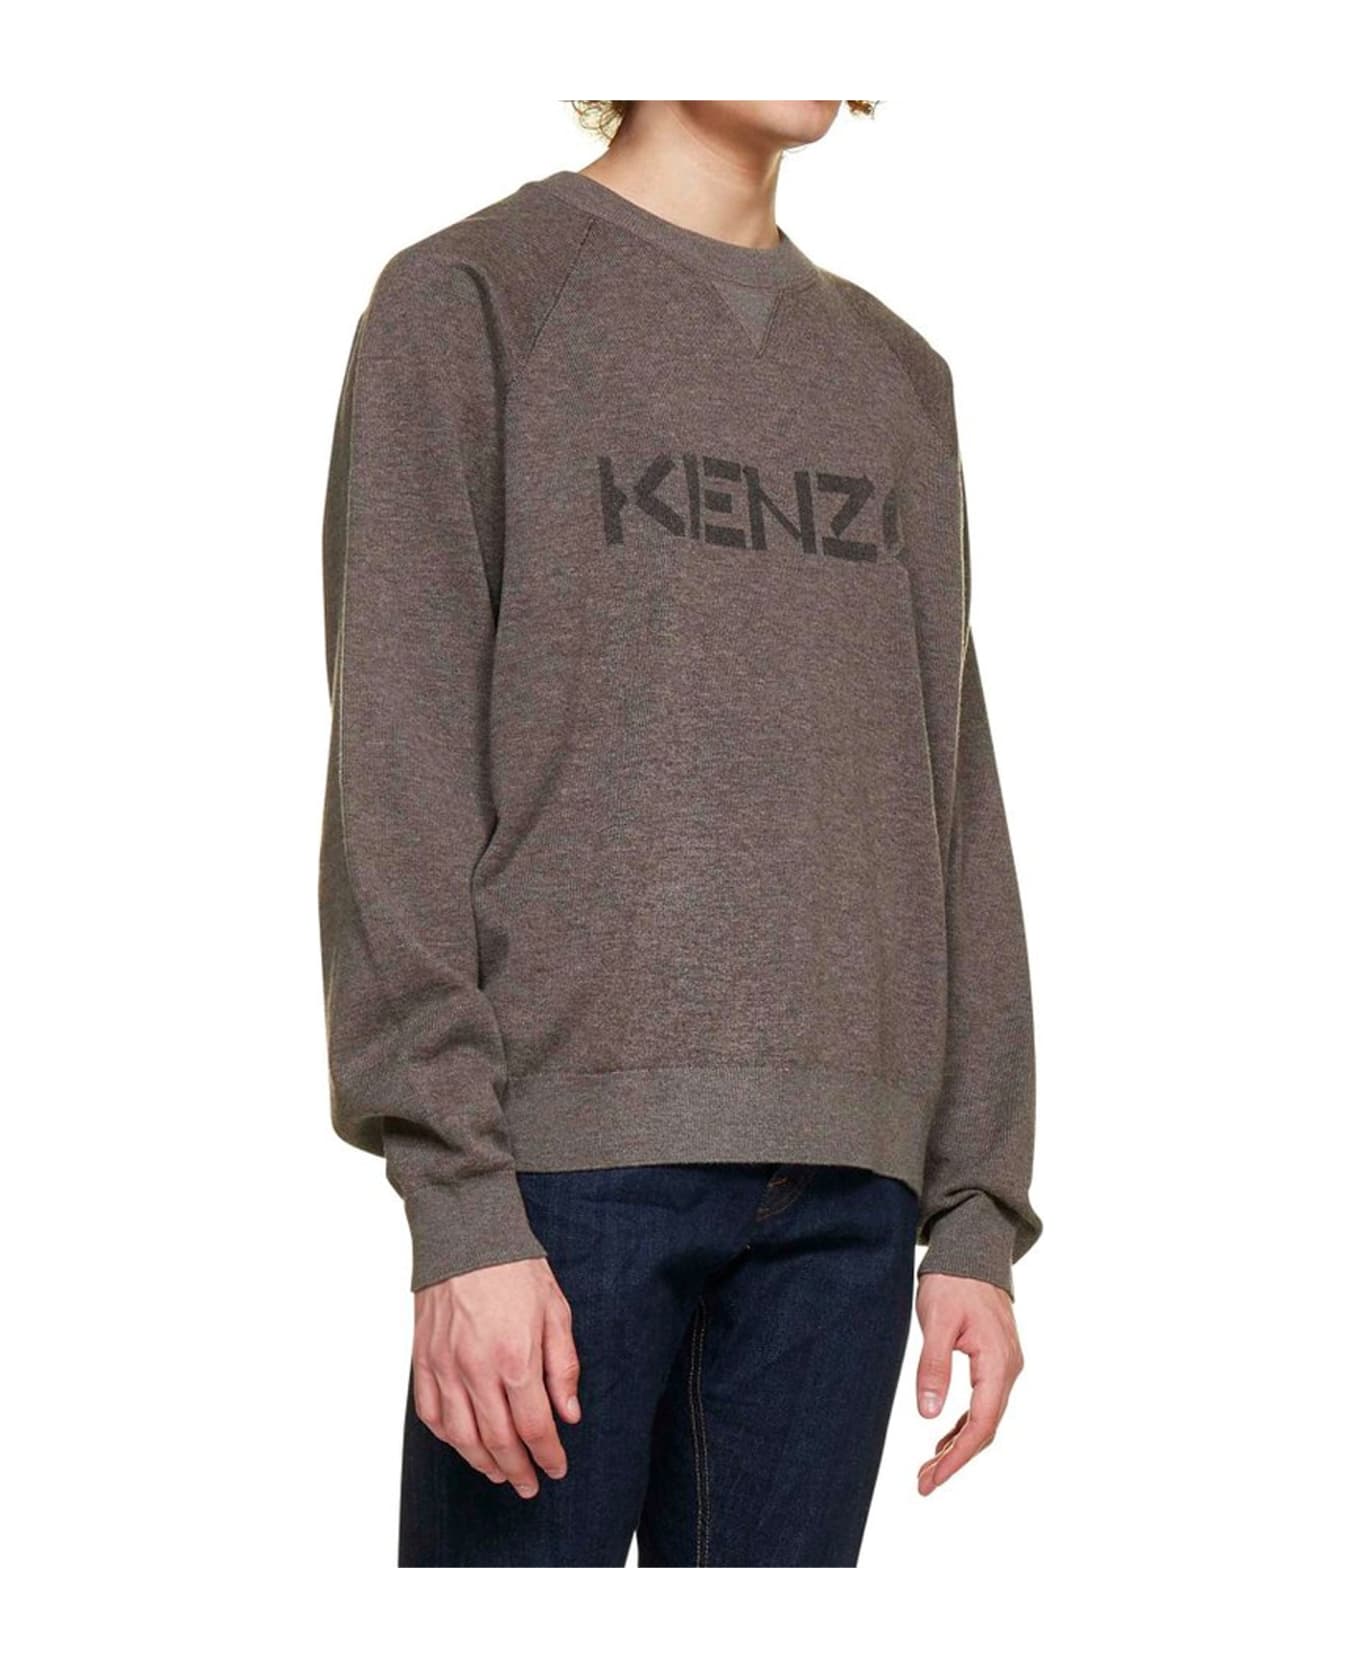 Kenzo Logo Sweater - Brown